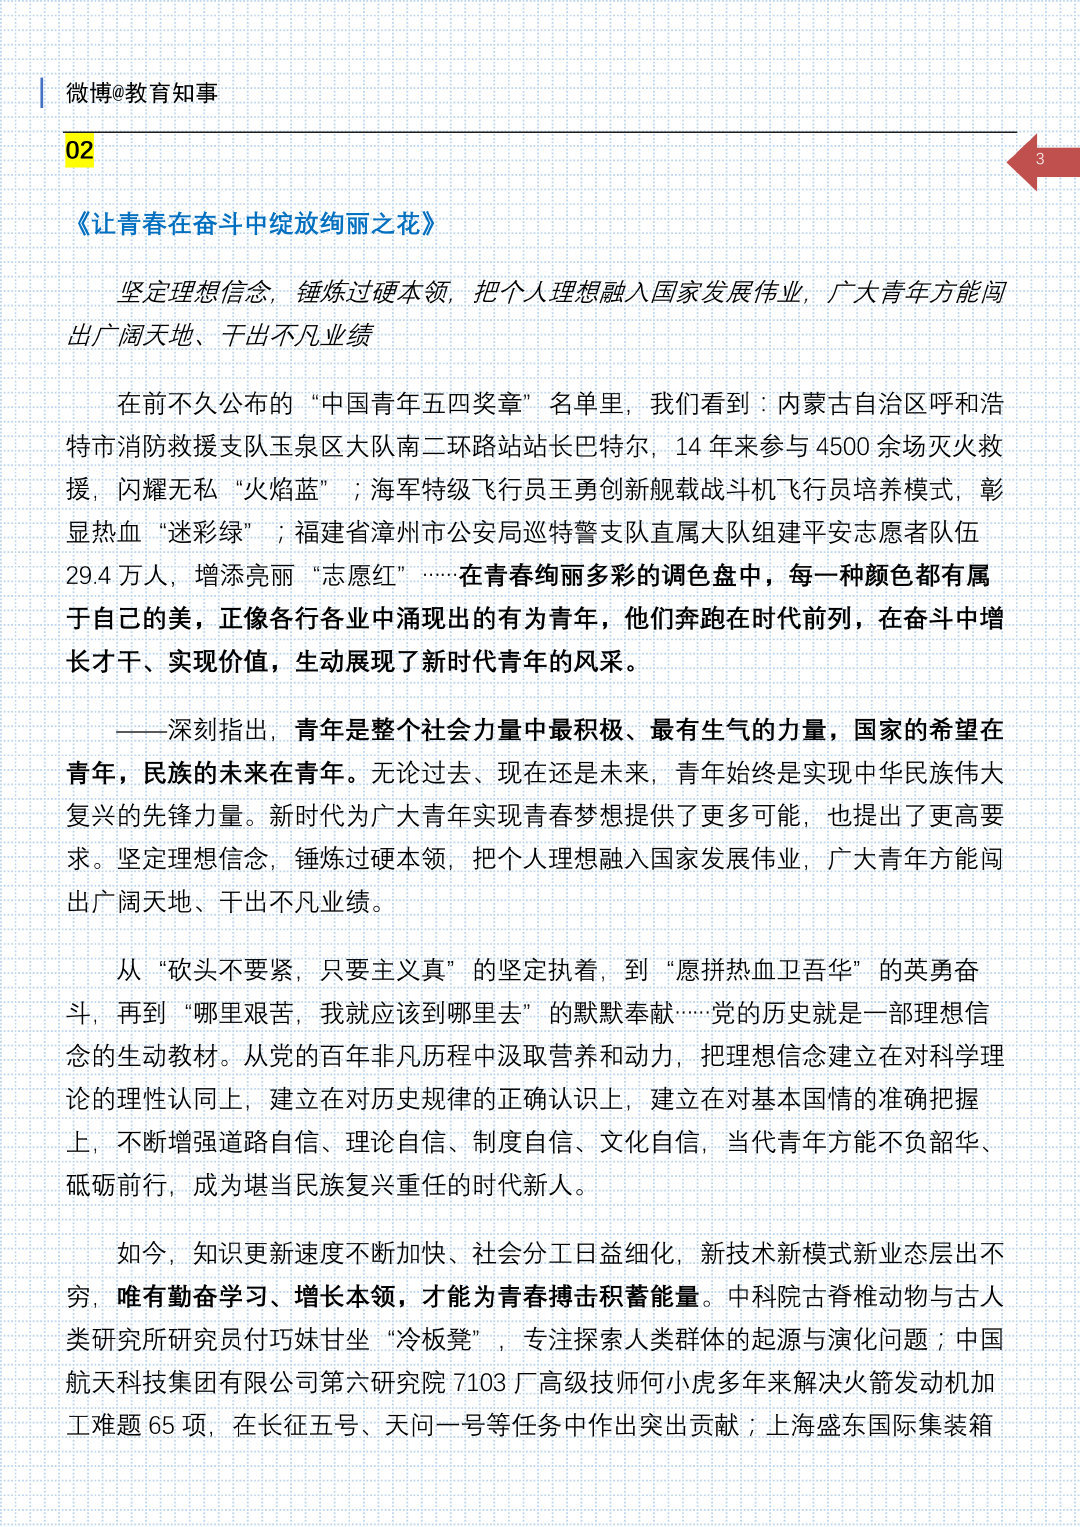 1963年3月5日， 《人民日报》和《解放军报》发表毛泽东题词“向雷锋同志学习”。-军事史-图片